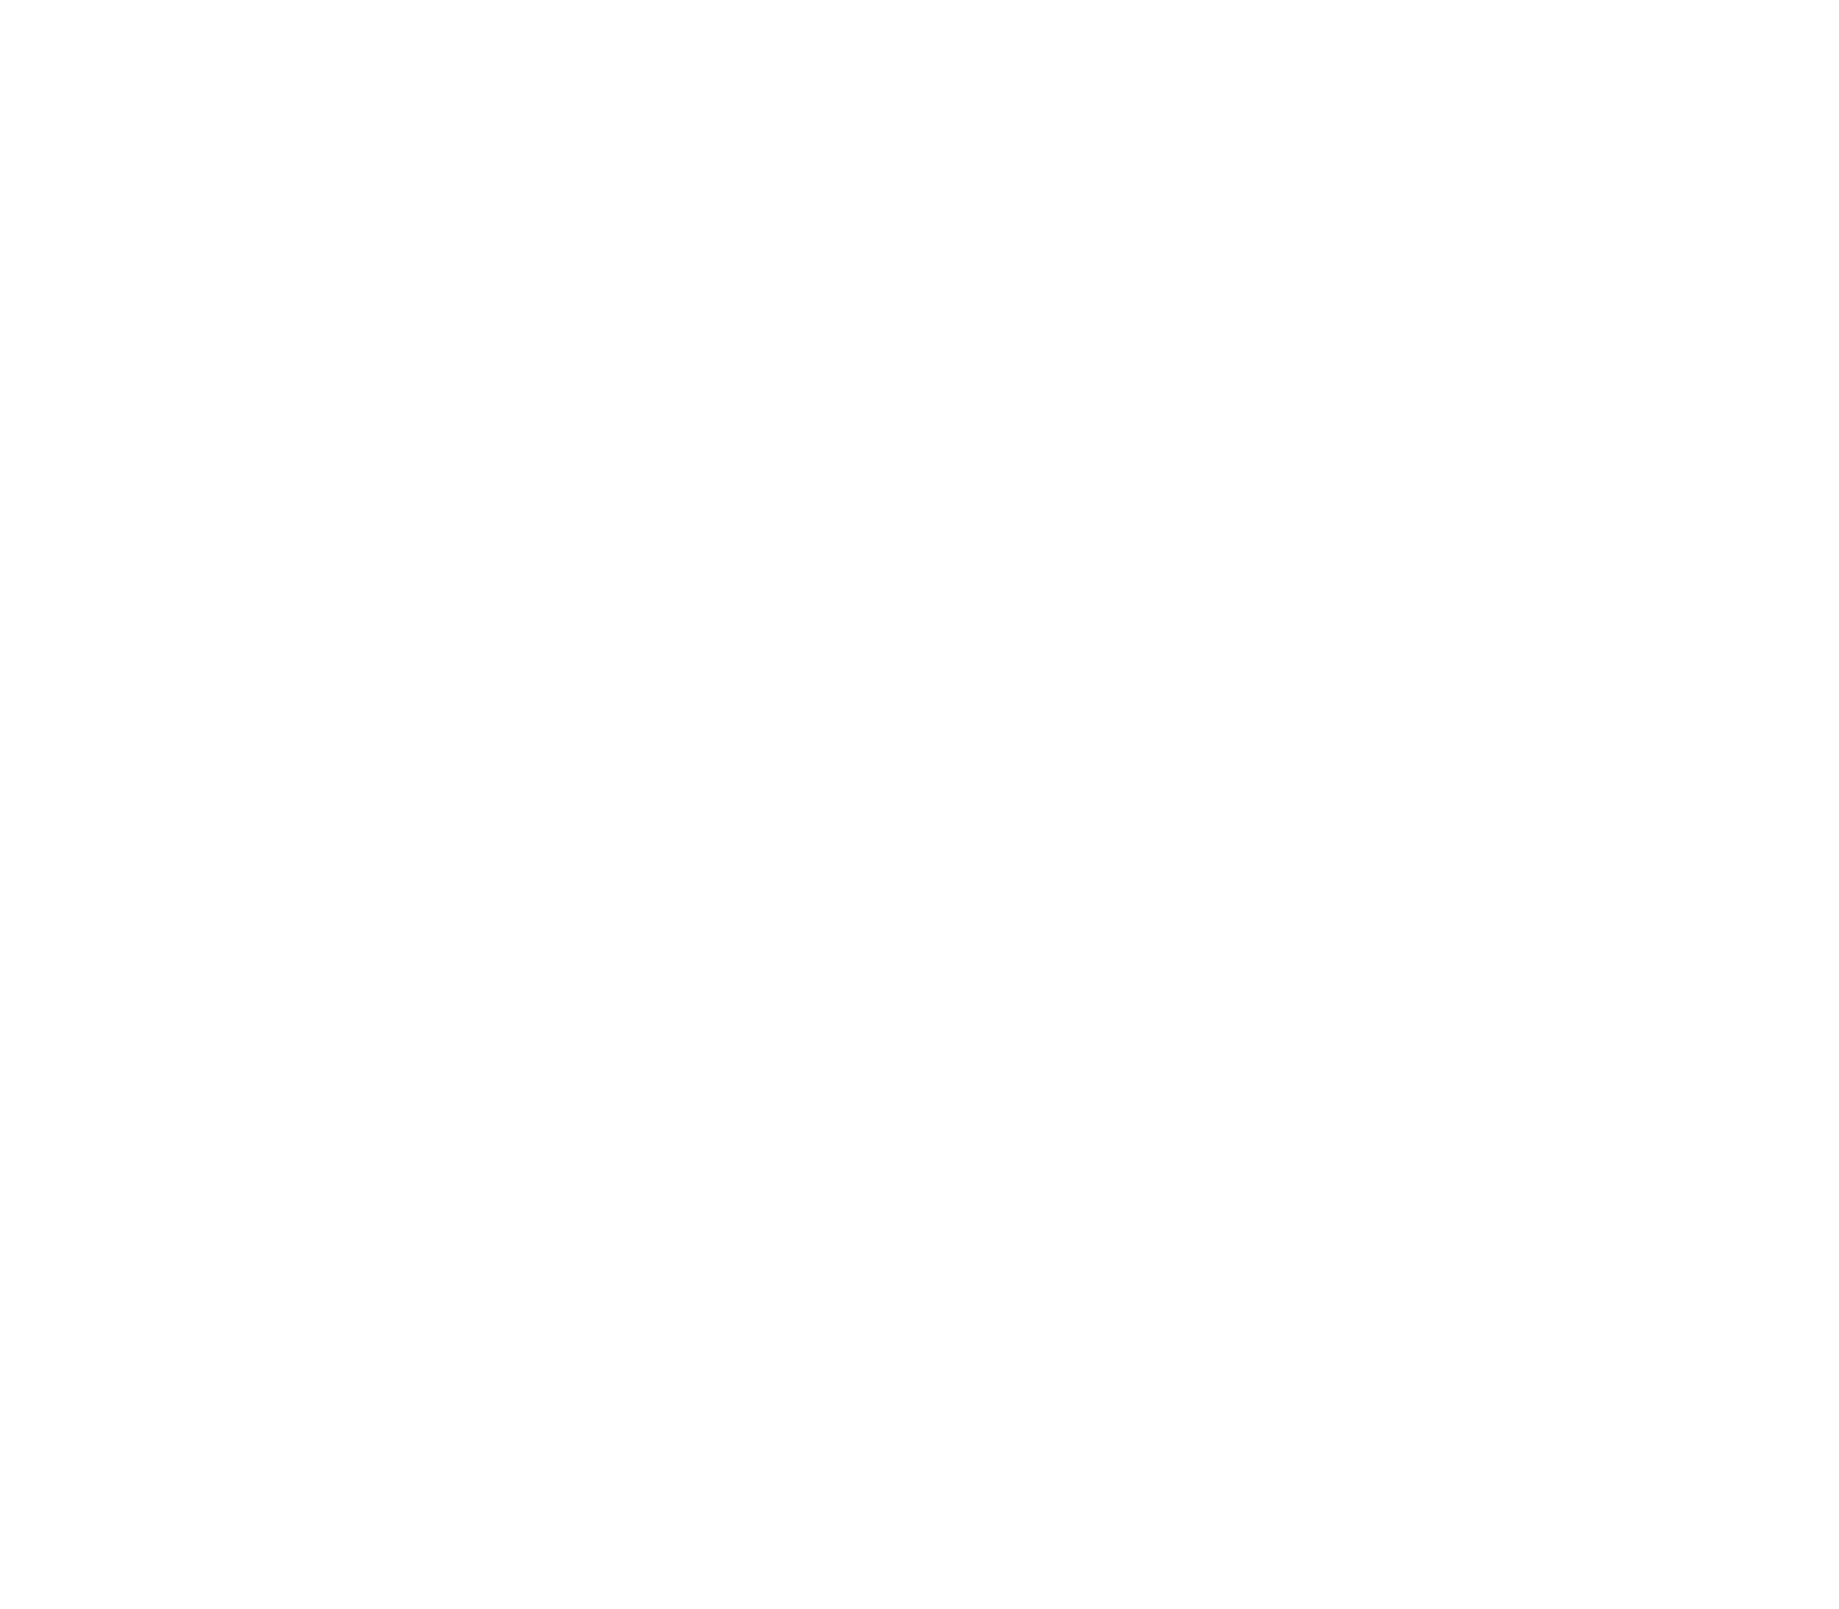 Nalu's Portlio